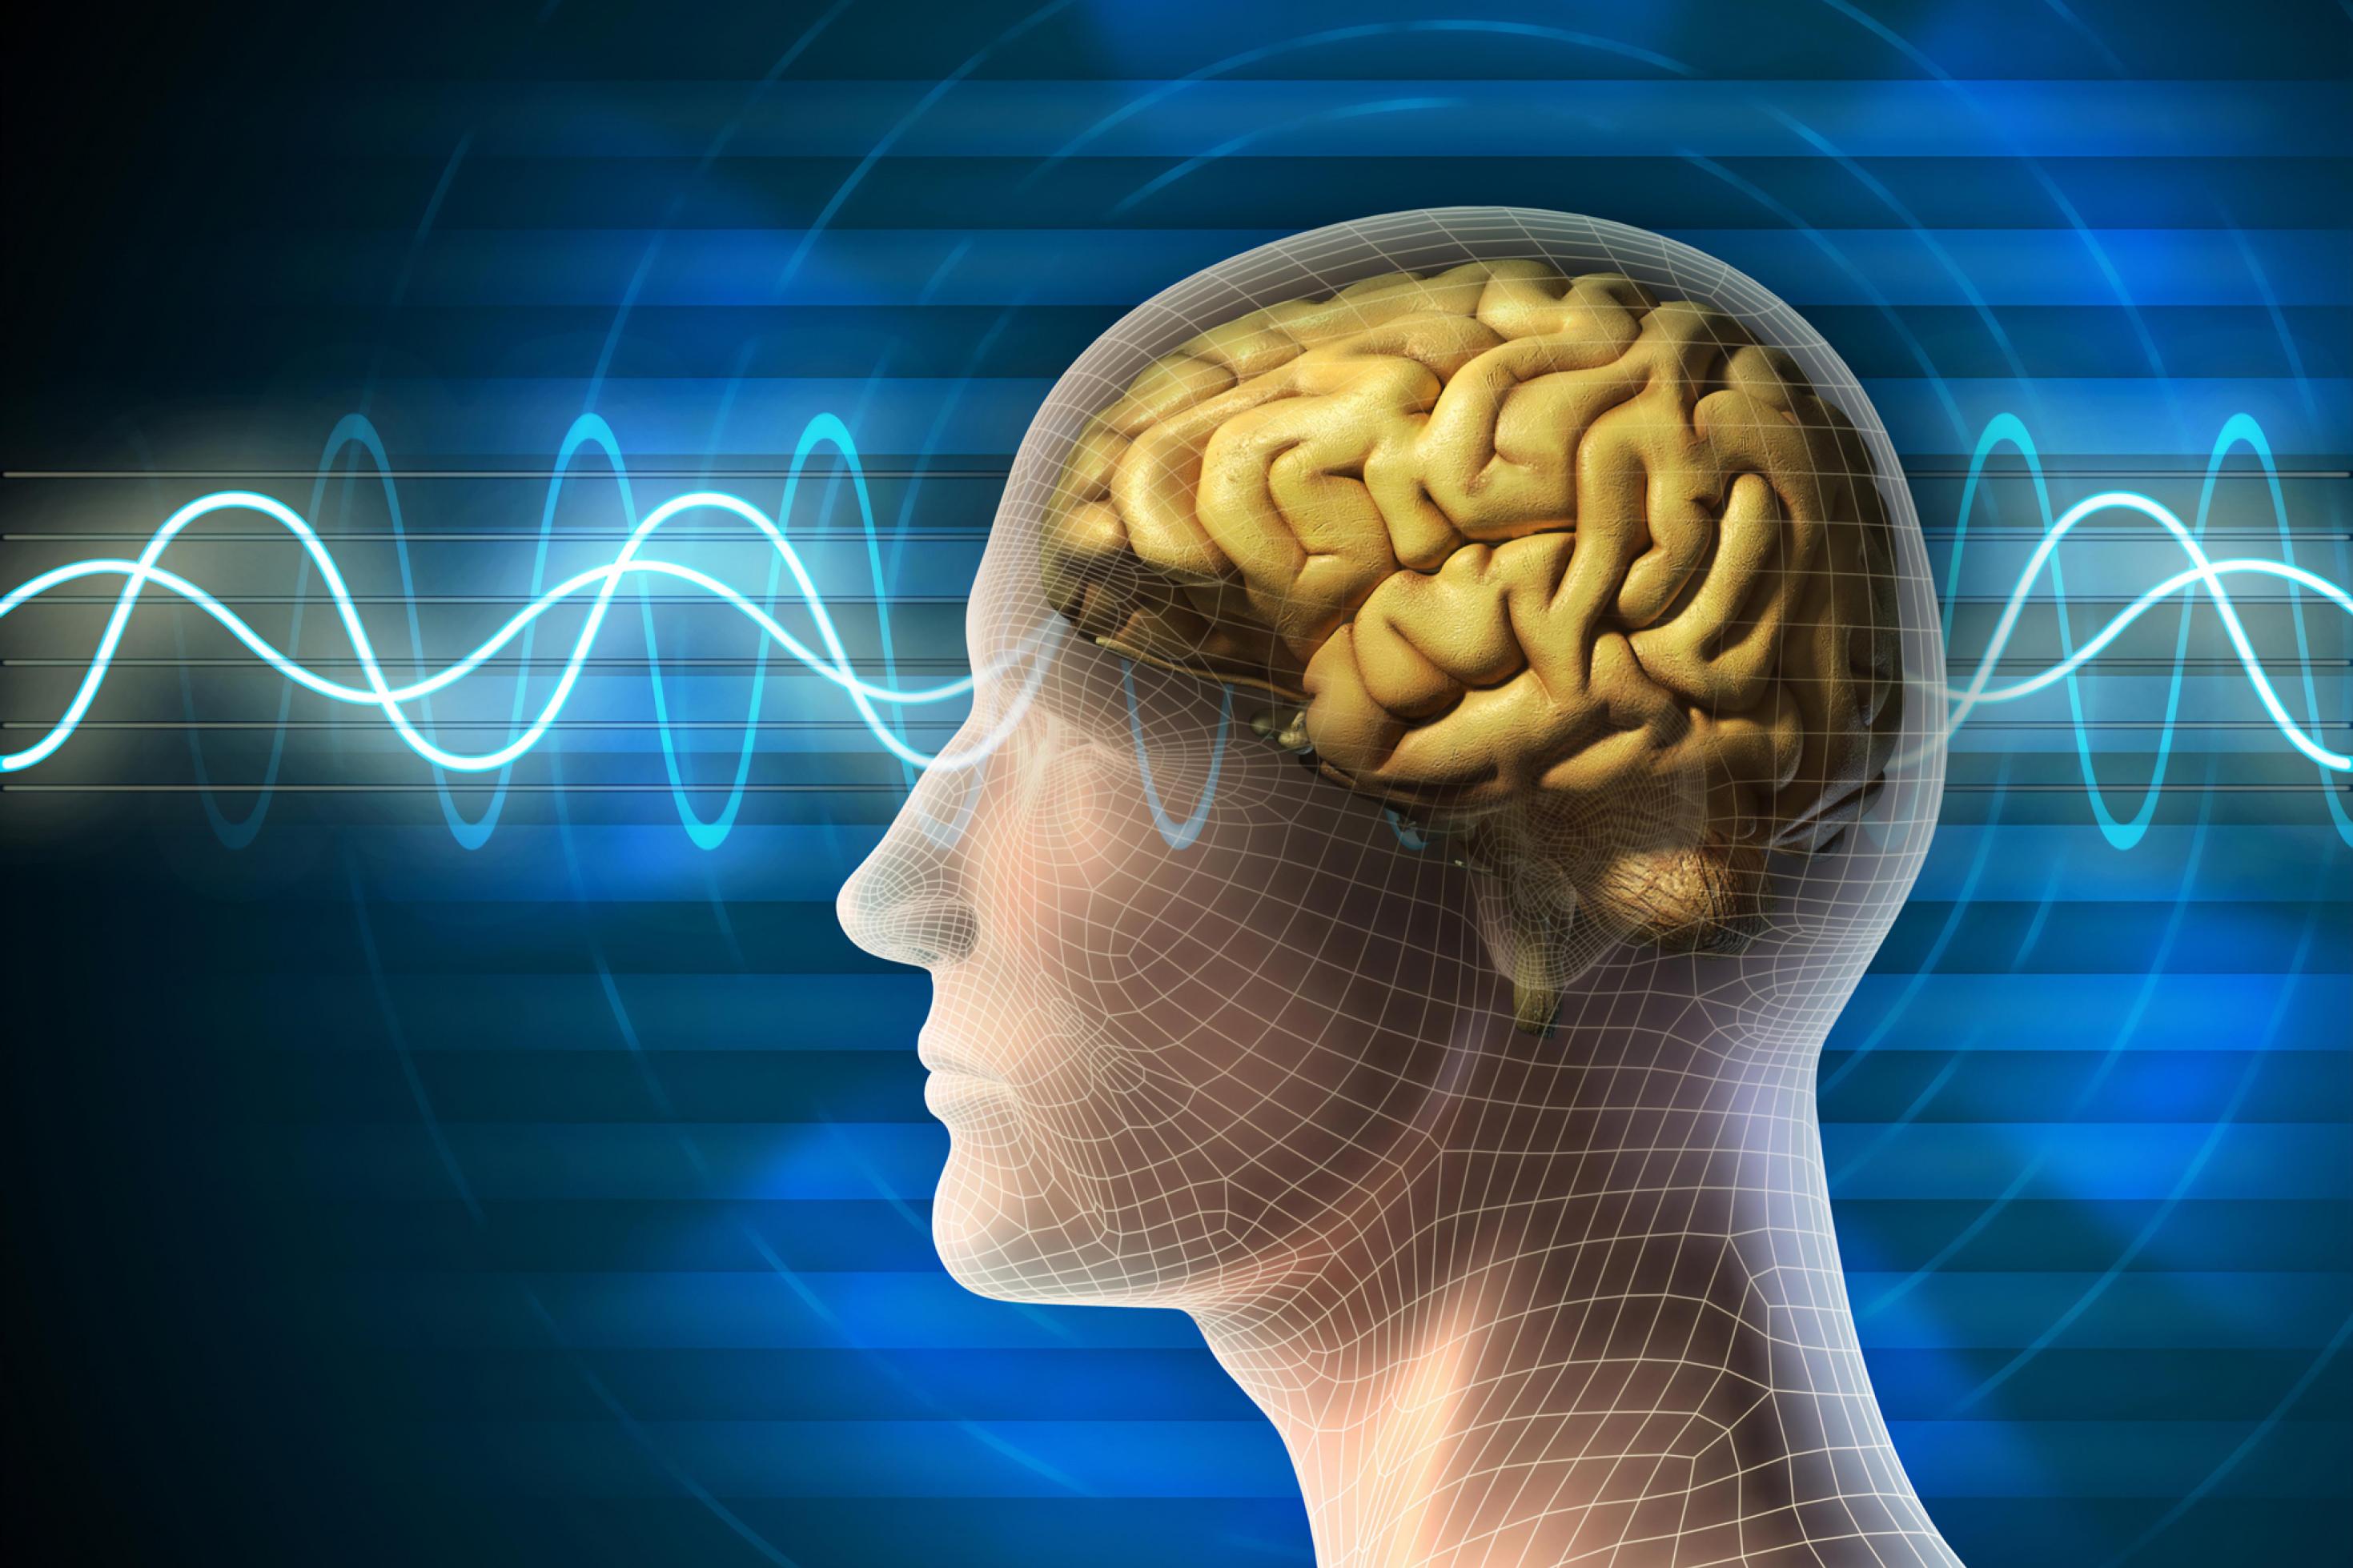 Die Grafik zeigt vor blauem Hintergrund die Silhouette eines Kopfes mit einem gelb eingezeichneten Gehirn darin. Von links nach rechts durchlaufen Wellen den Kopf, die Hirnaktivitäten und die Zeit symbolisieren.